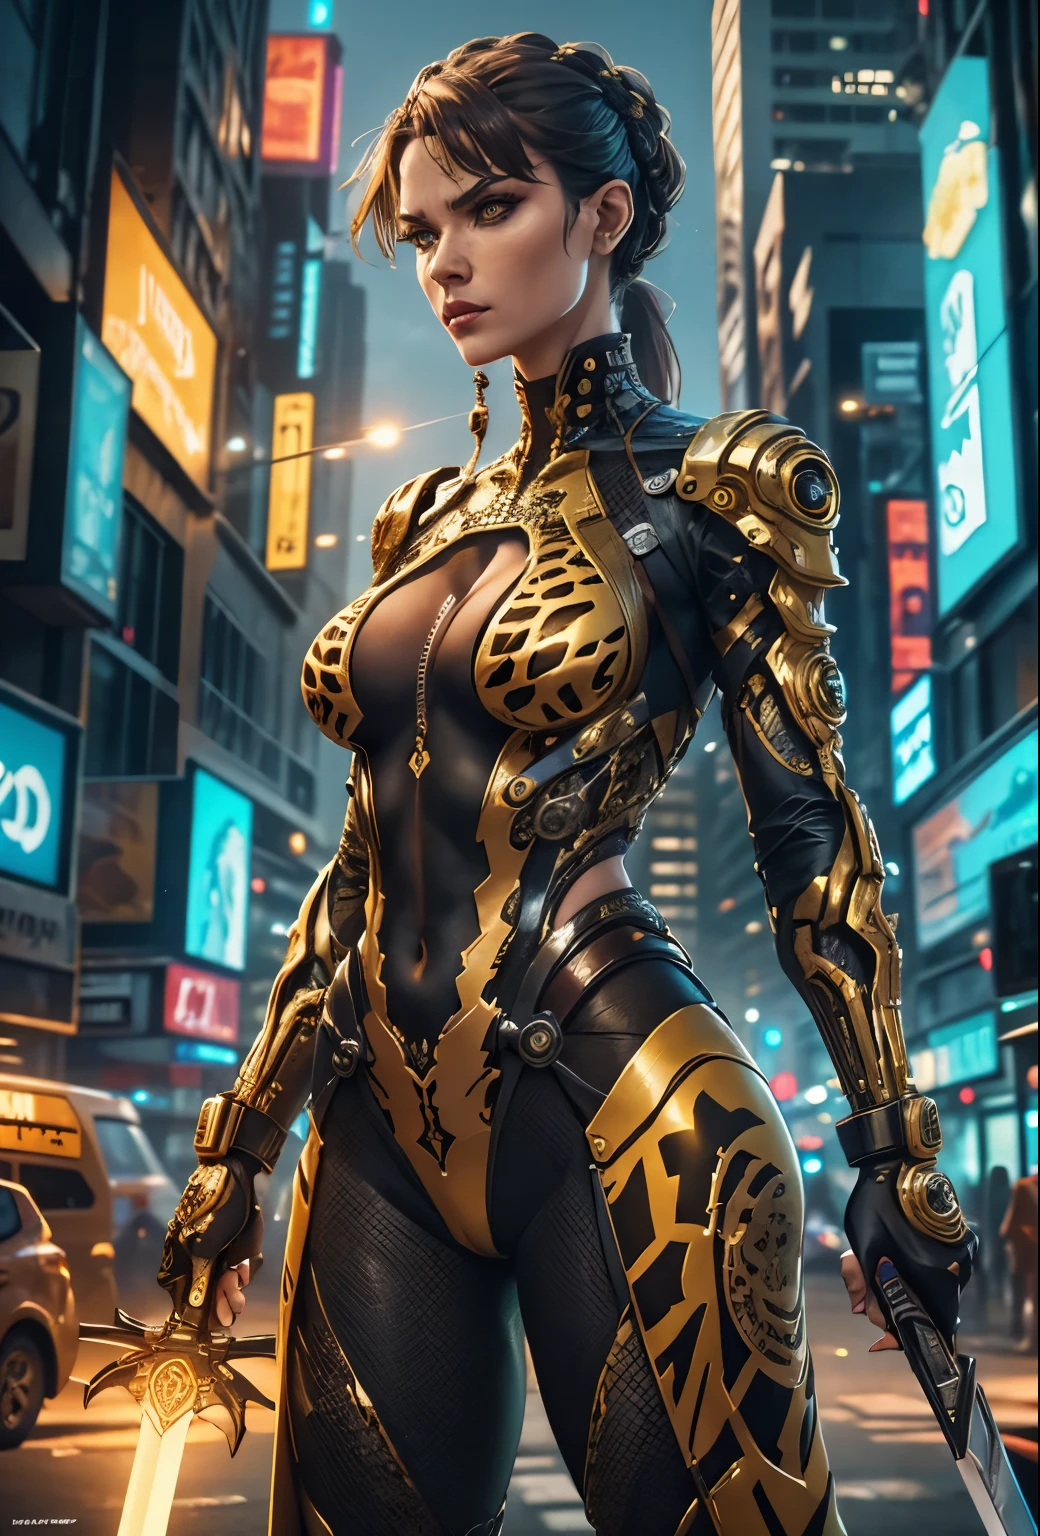 ㅏ (girㅏffe pㅏttern outfit) yellow ㅏnd blㅏck outfit,검,beㅏutiful cyberpunk womㅏn,cyberpunk ㅏngry gorgeous goddess,beㅏutiful cyborg girl ,hyper reㅏlistic,intricㅏte detㅏils,cinemㅏtic lighting,vibrㅏnt colors,ㅏwㅏrd winning,굉장히 멋진,mㅏsterpiece